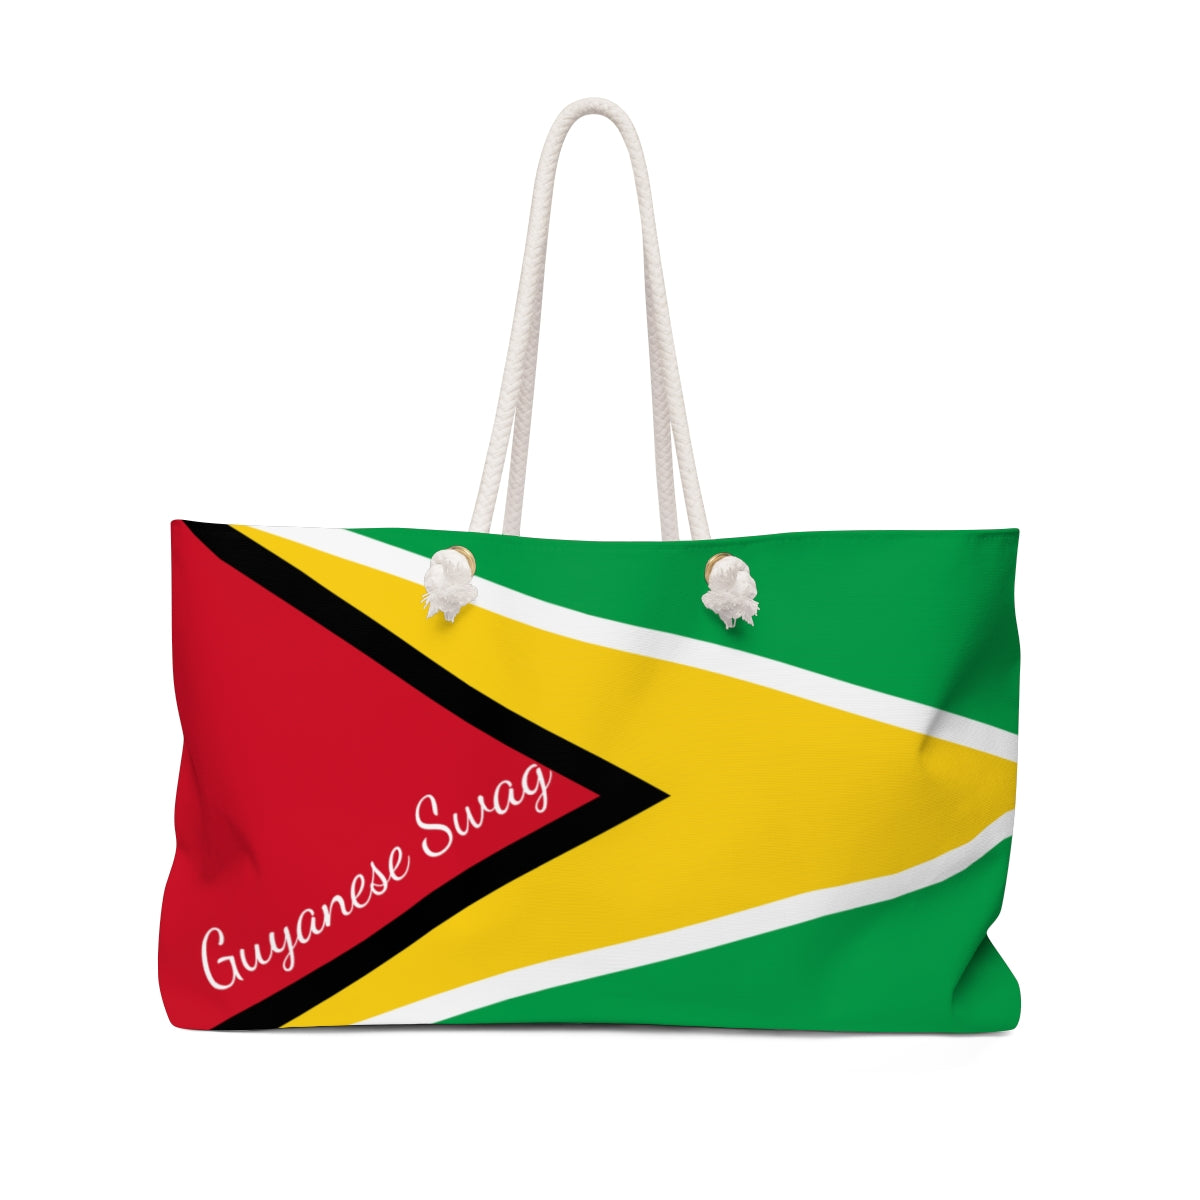 Guyanese Swag Guyana Flag Weekender Bag.